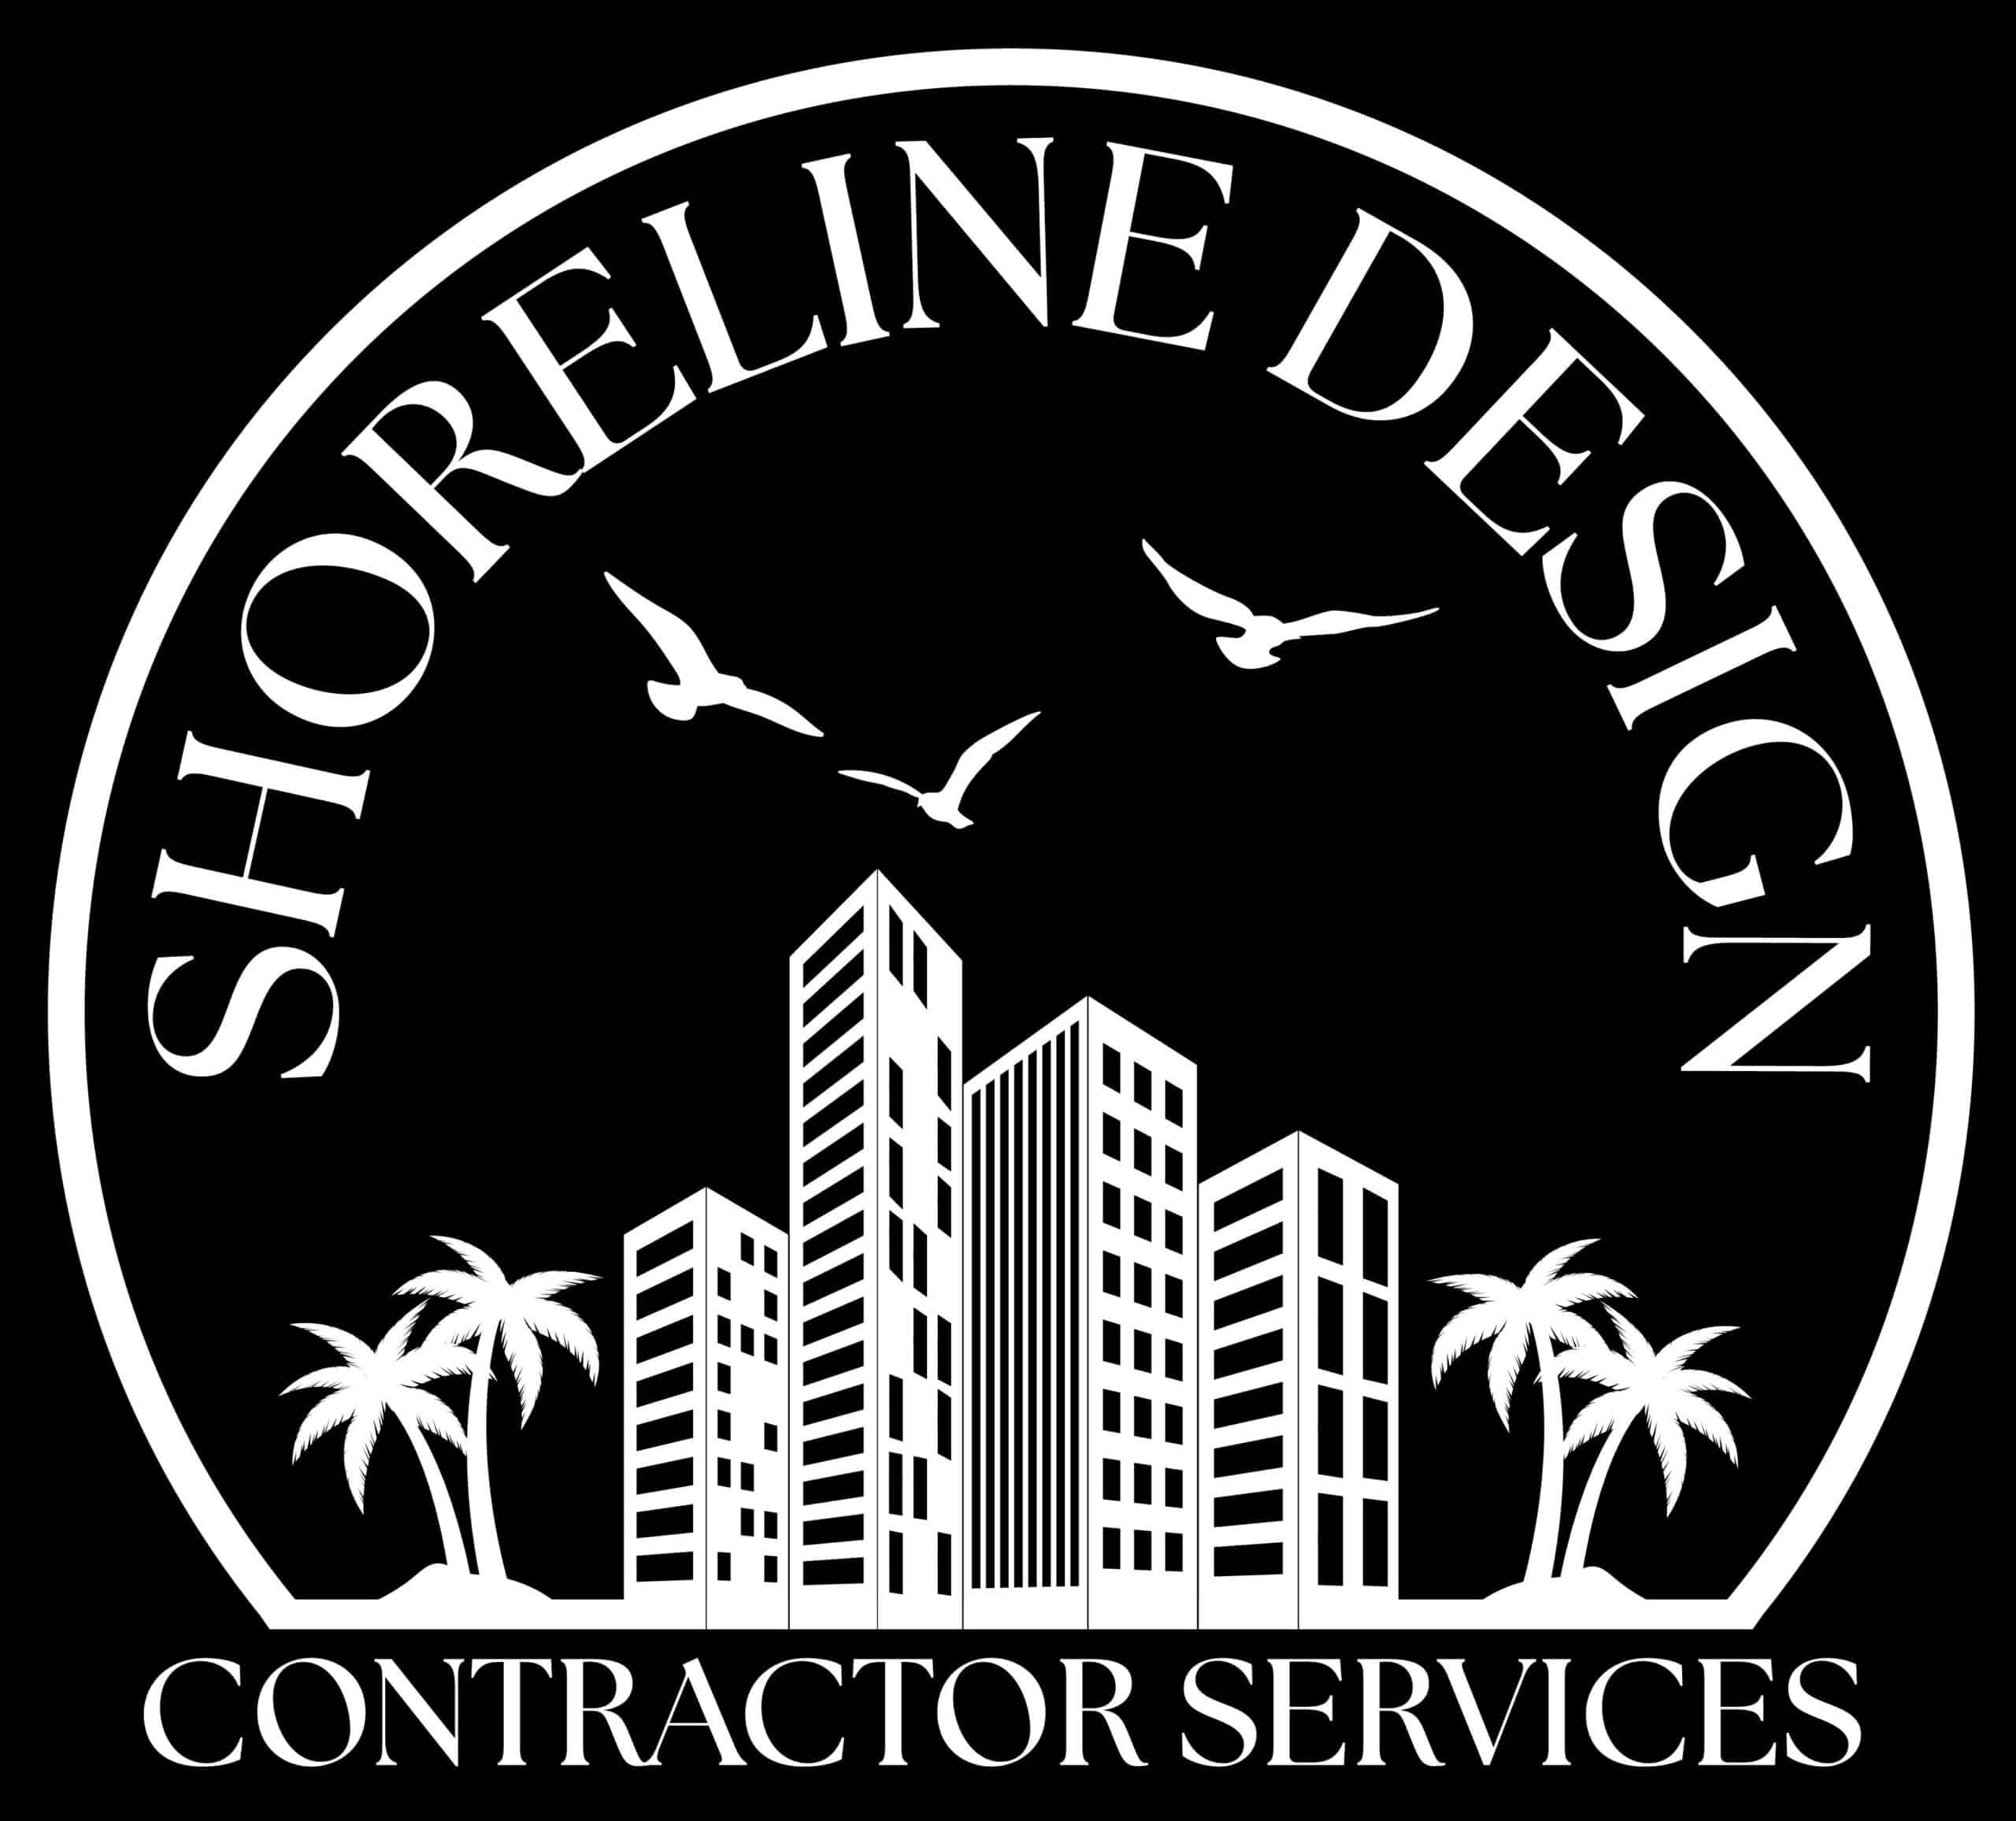 Waterproofing Contractor Company in Miami - Shoreline Design